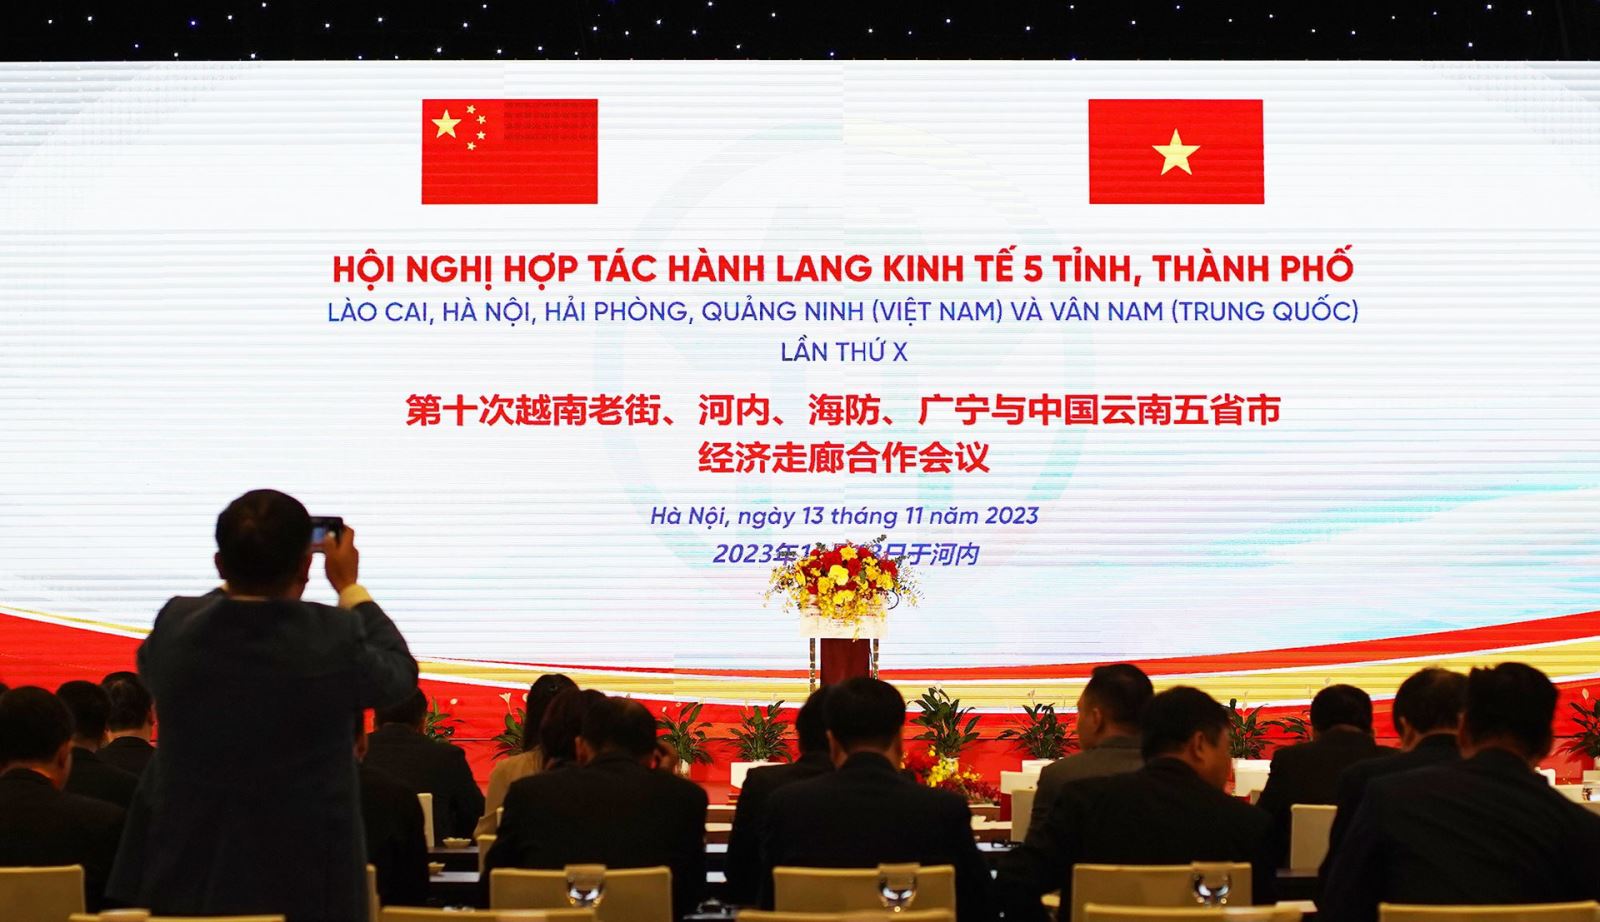 Khai mạc Hội nghị hợp tác 5 tỉnh, thành Việt Nam - Trung Quốc - Ảnh 1.